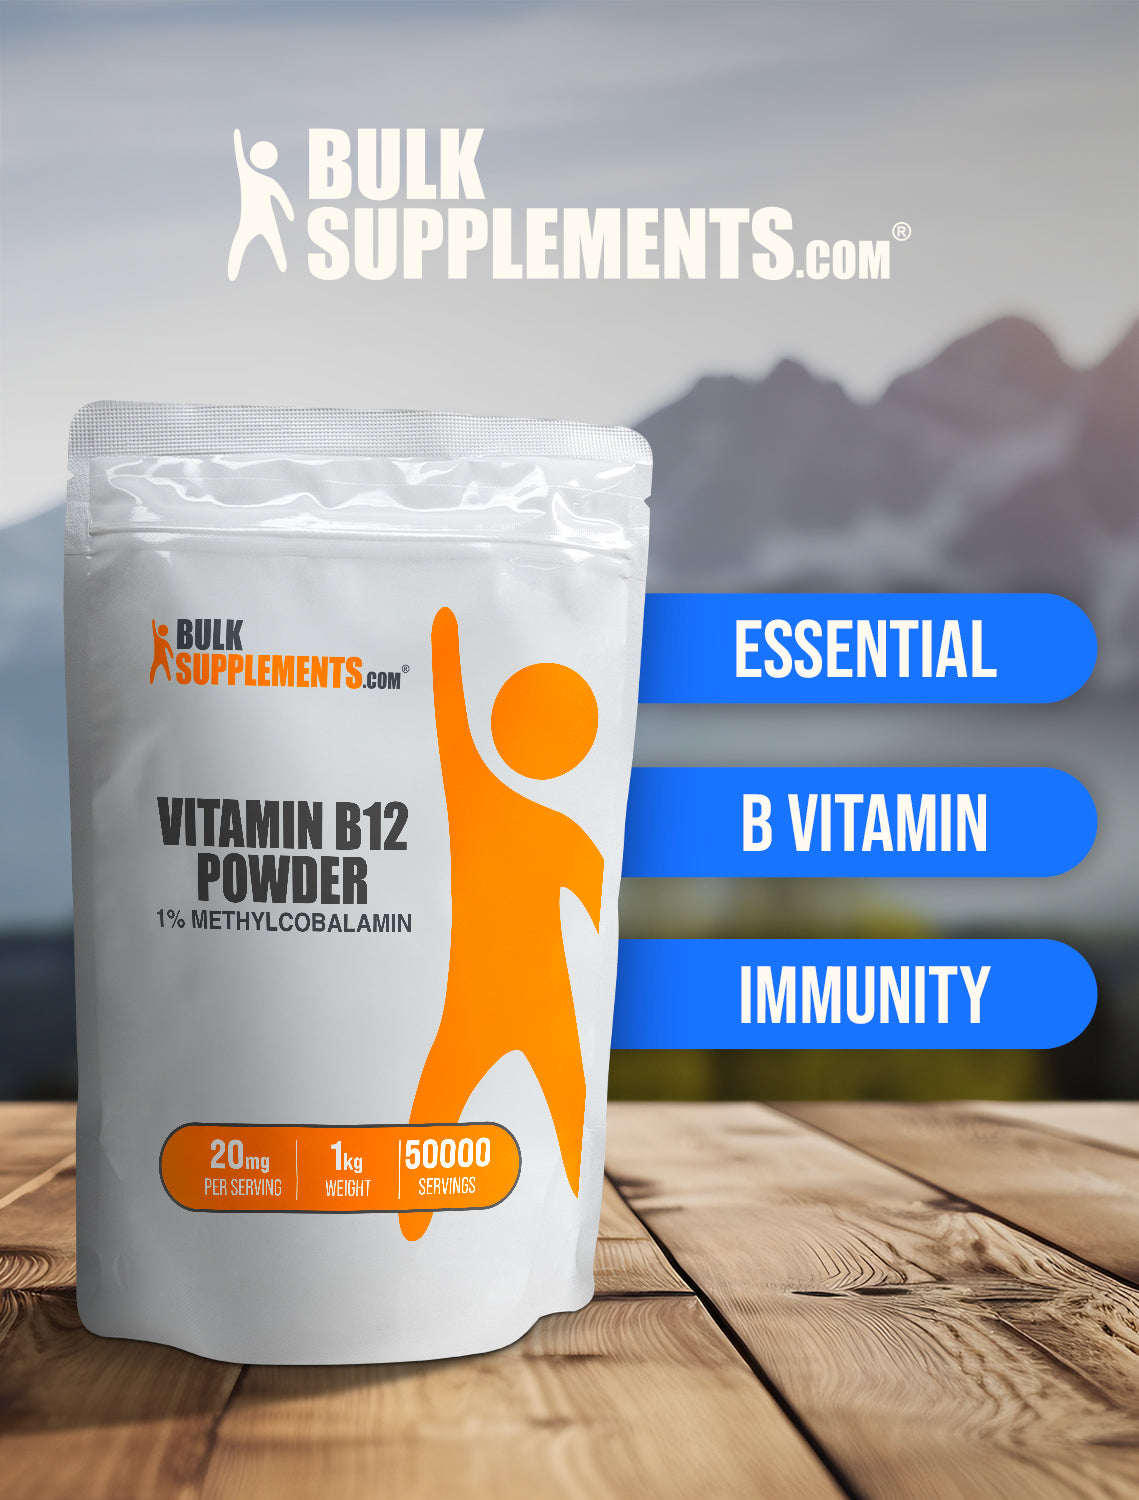 Vitamin B12 1% Methylcobalamin powder keyword image 1kg